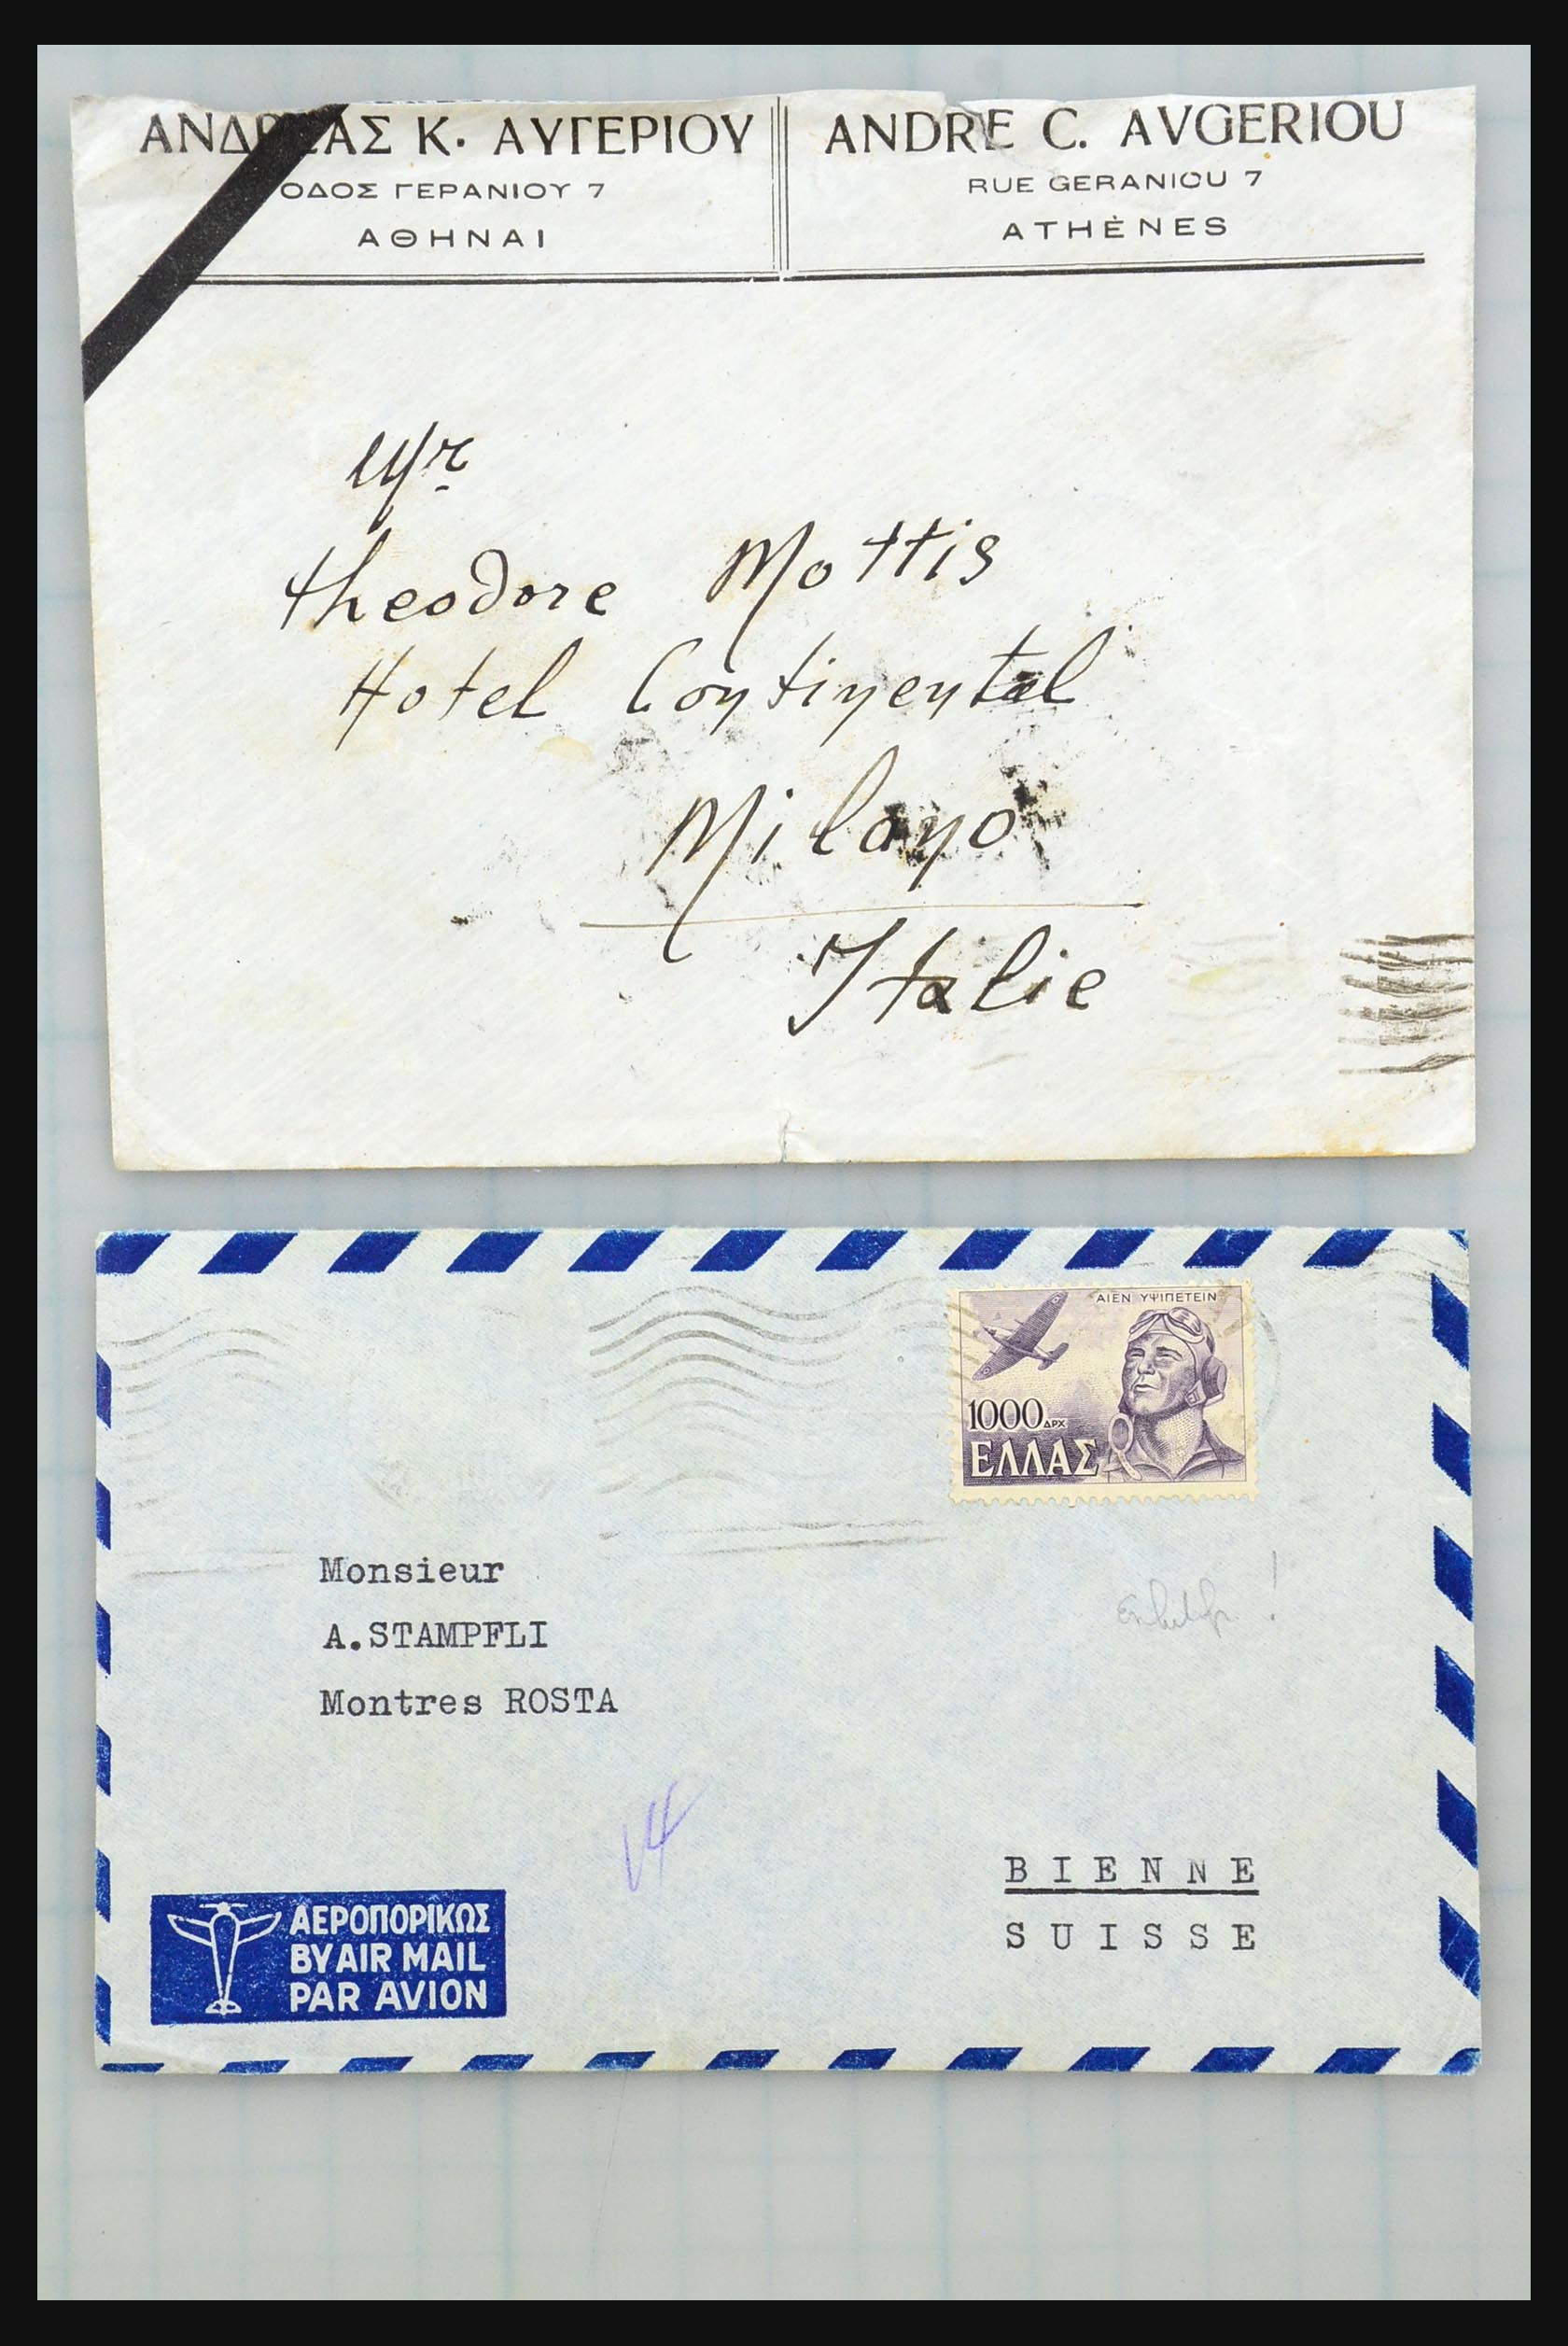 31358 116 - 31358 Portugal/Luxemburg/Griekenland brieven 1880-1960.